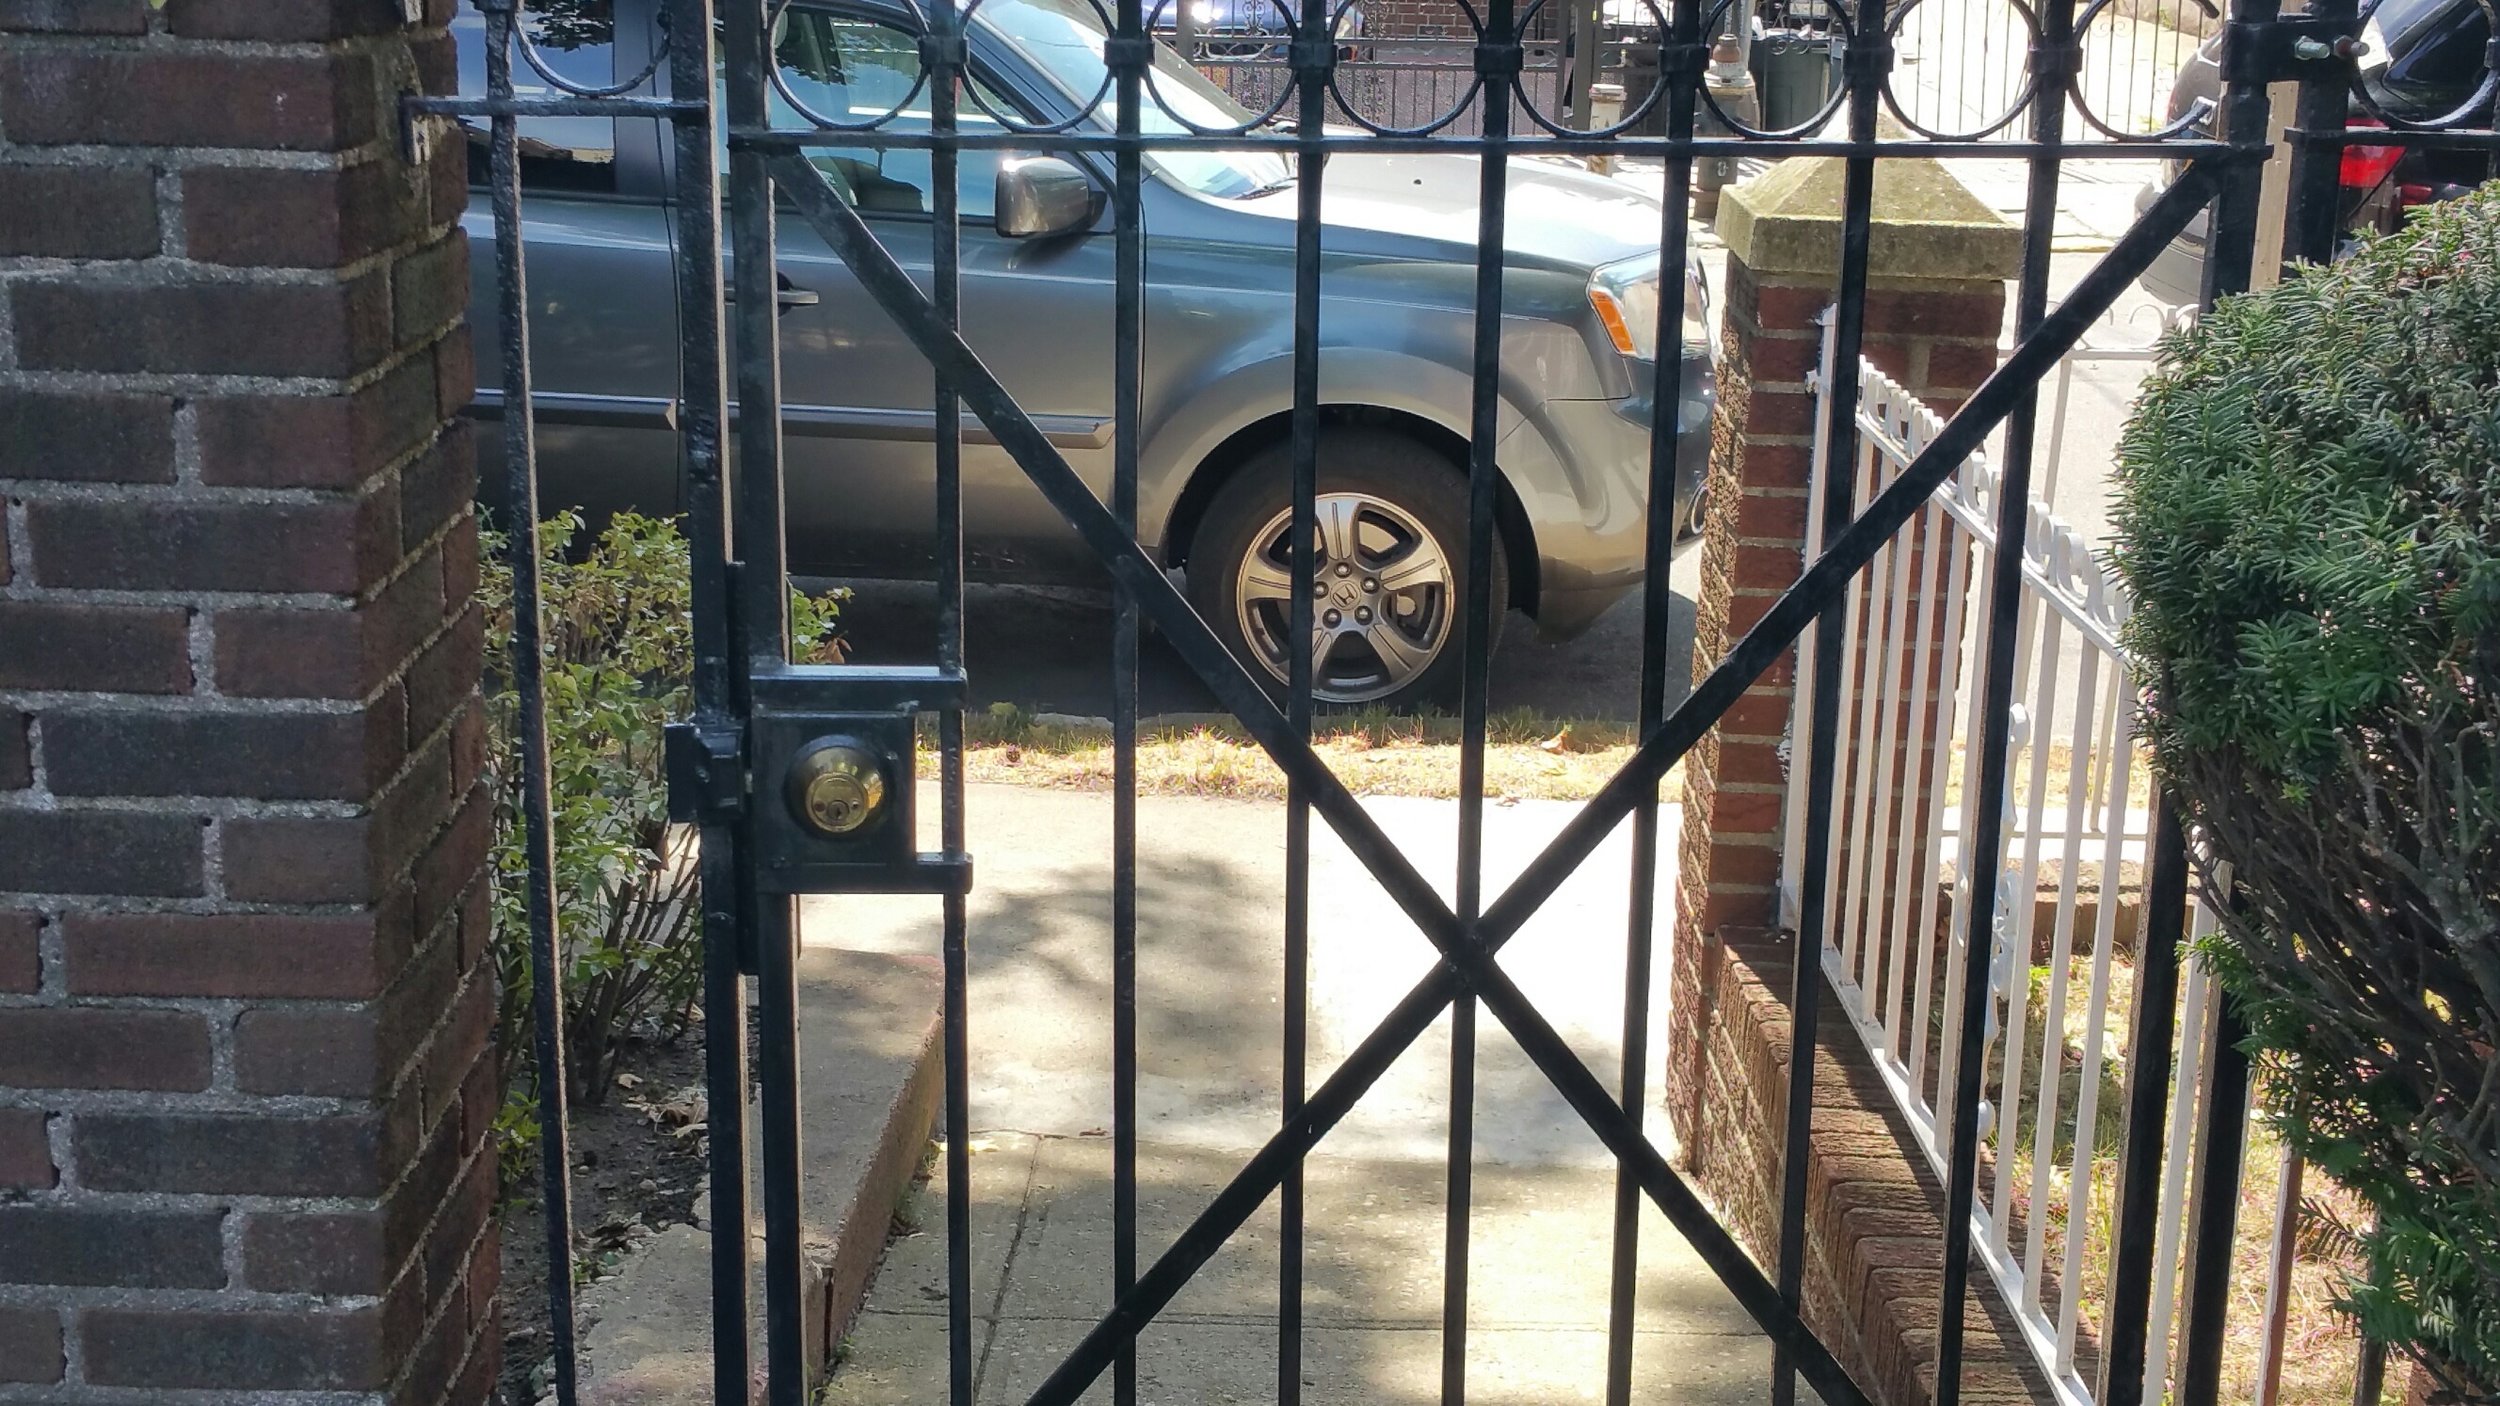 Bracci door and gate design